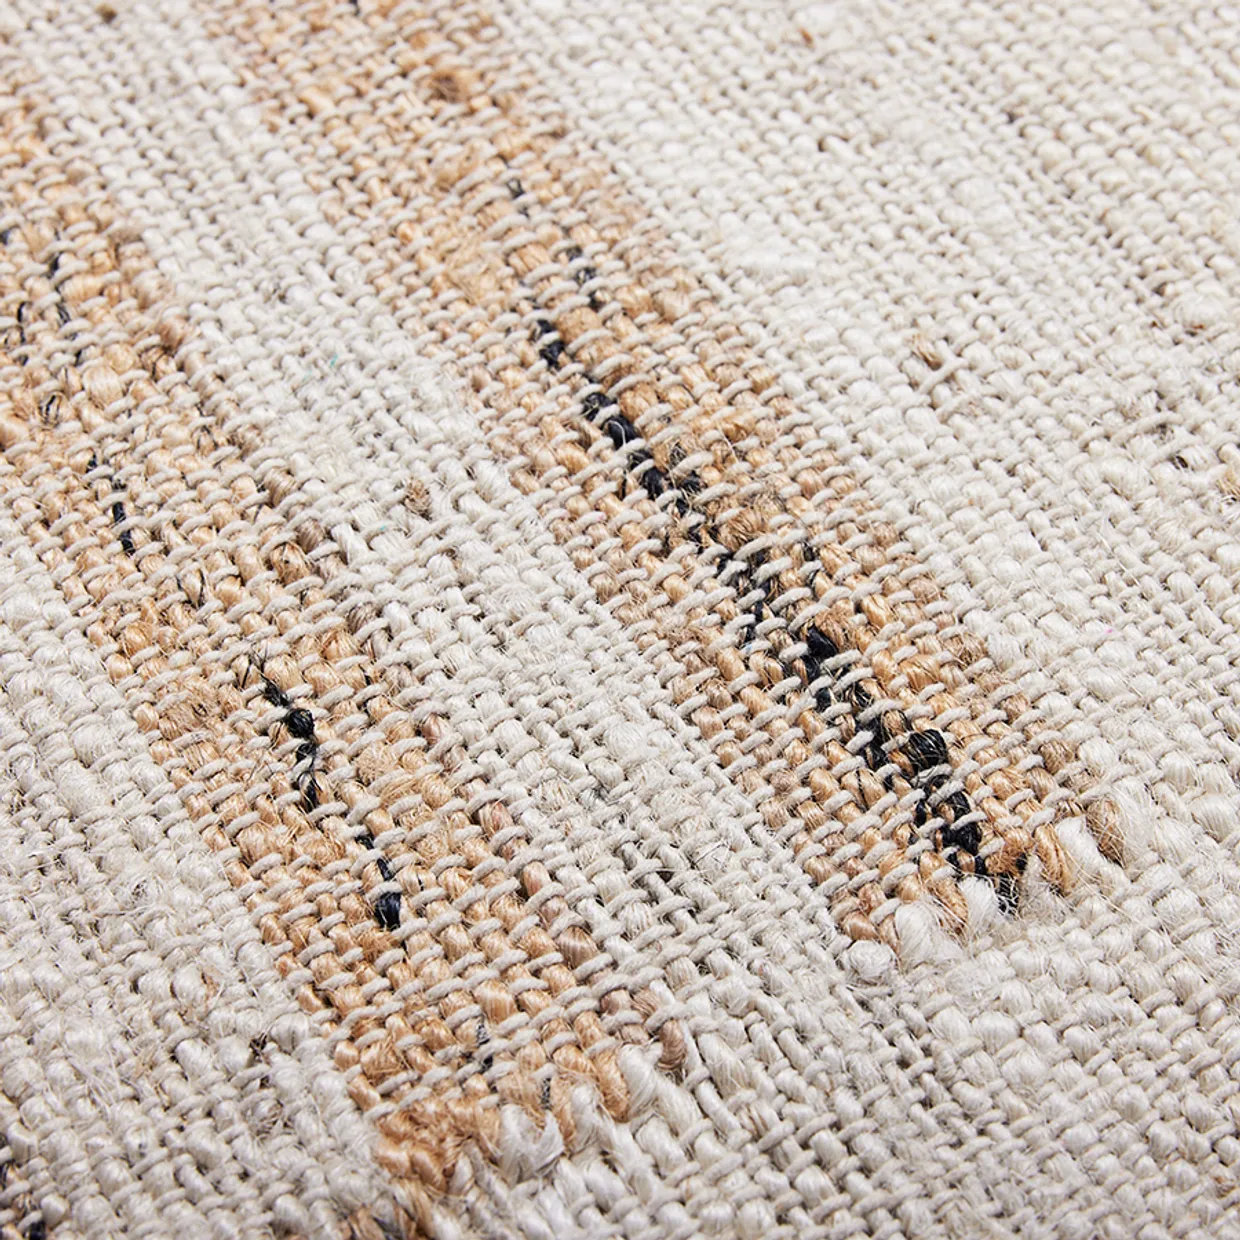 Natural jute rug (120x180)